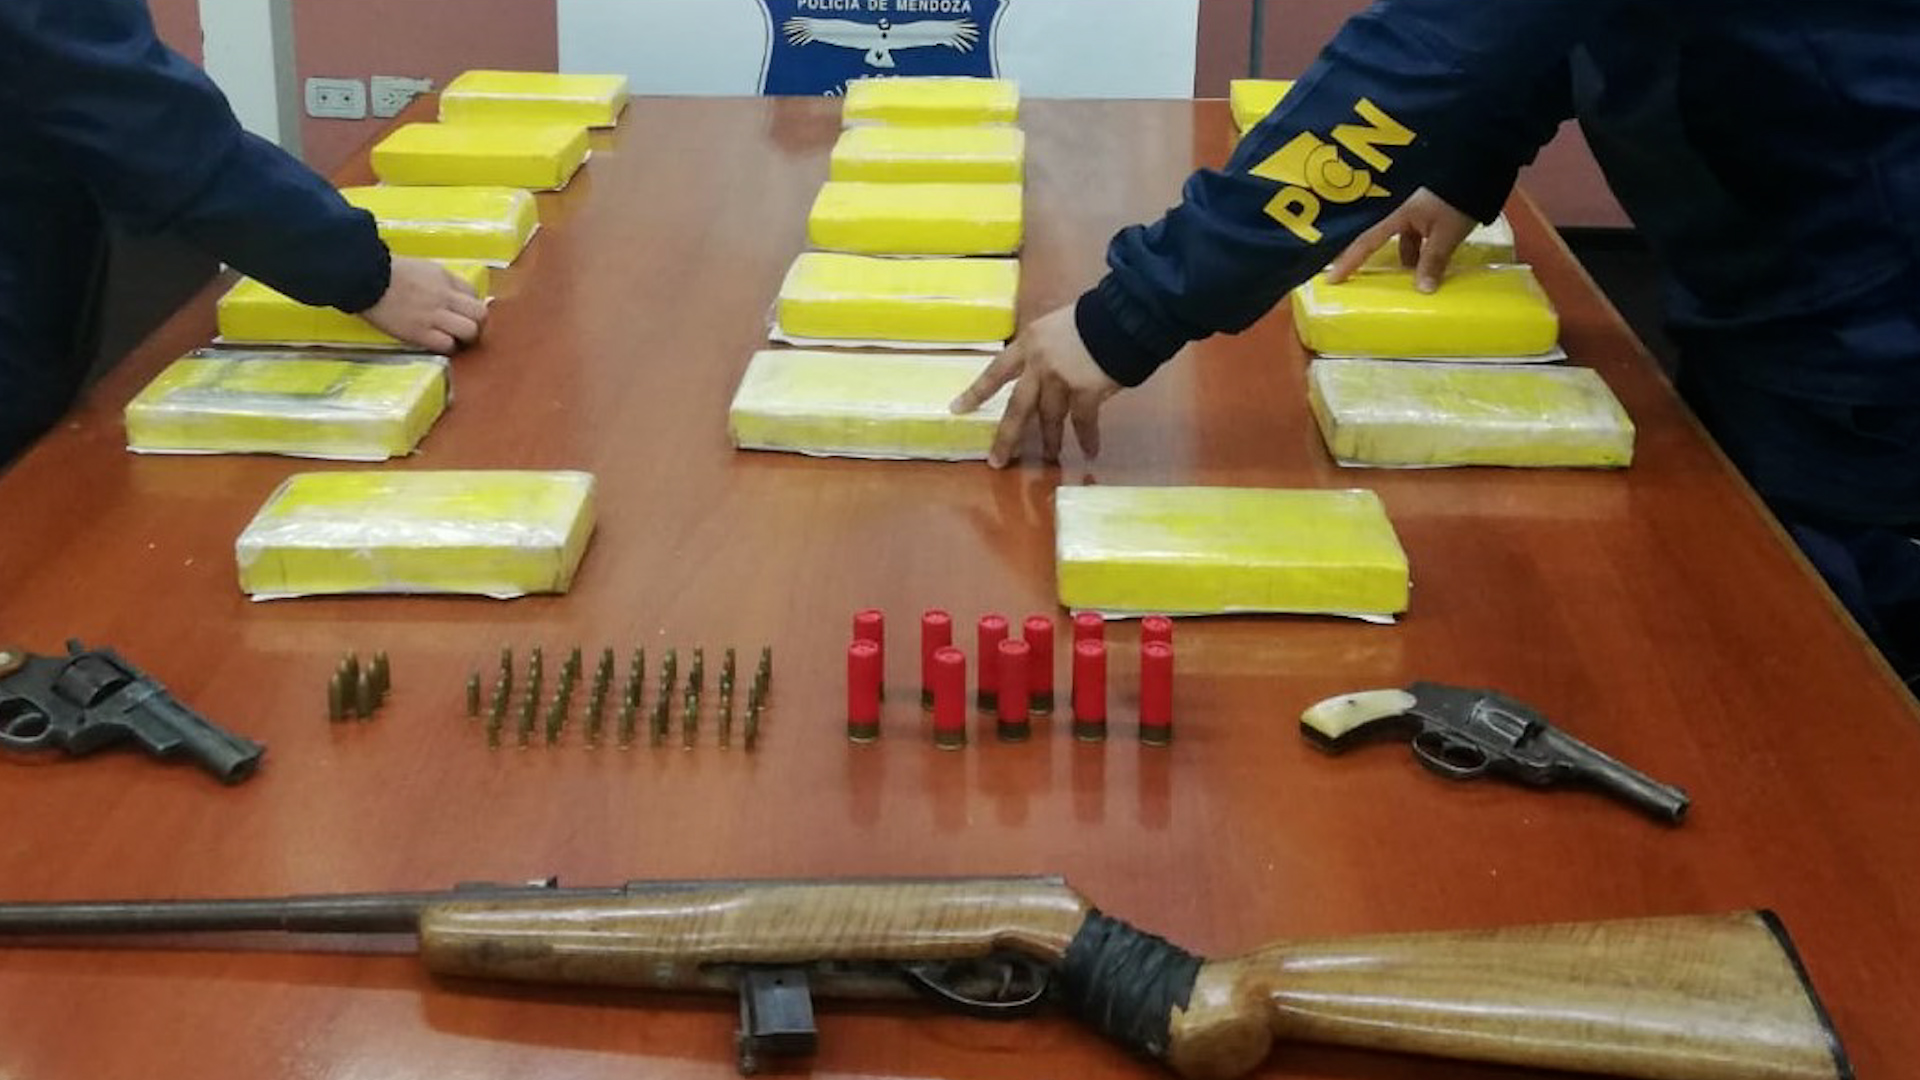 Detuvieron a tres personas con 18 kilos de cocaína en Mendoza: se hacían pasar por turistas y trabajaban para una banda
